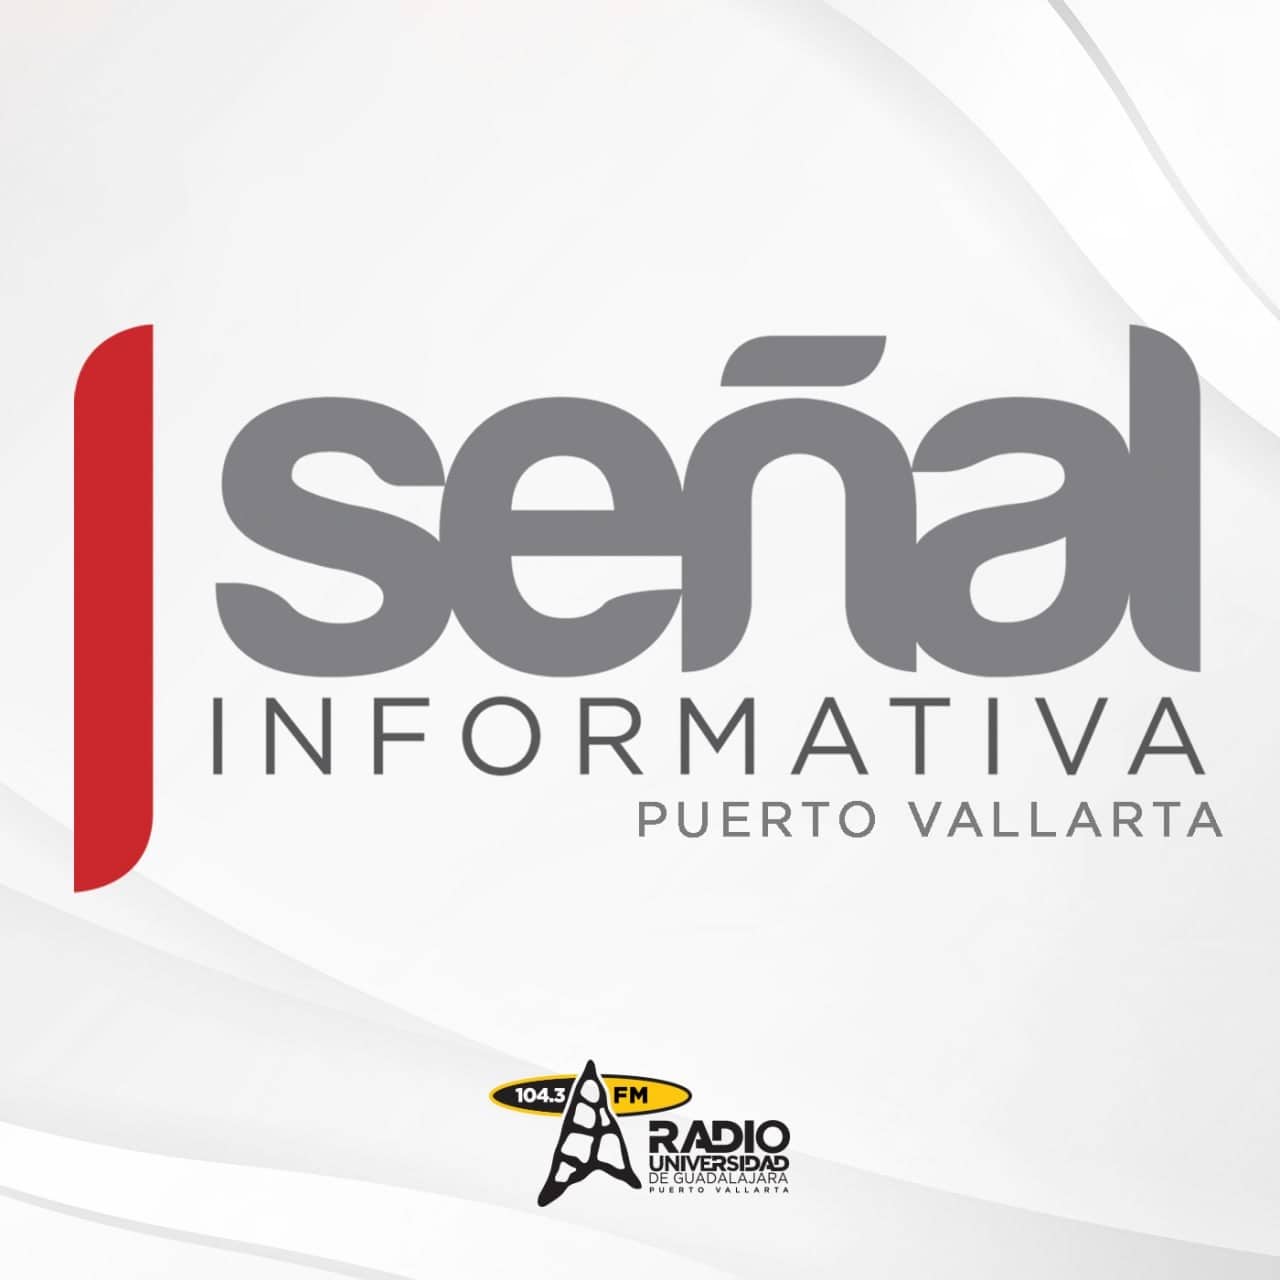 Señal Informativa Puerto Vallarta - 11 de Diciembre del 2023